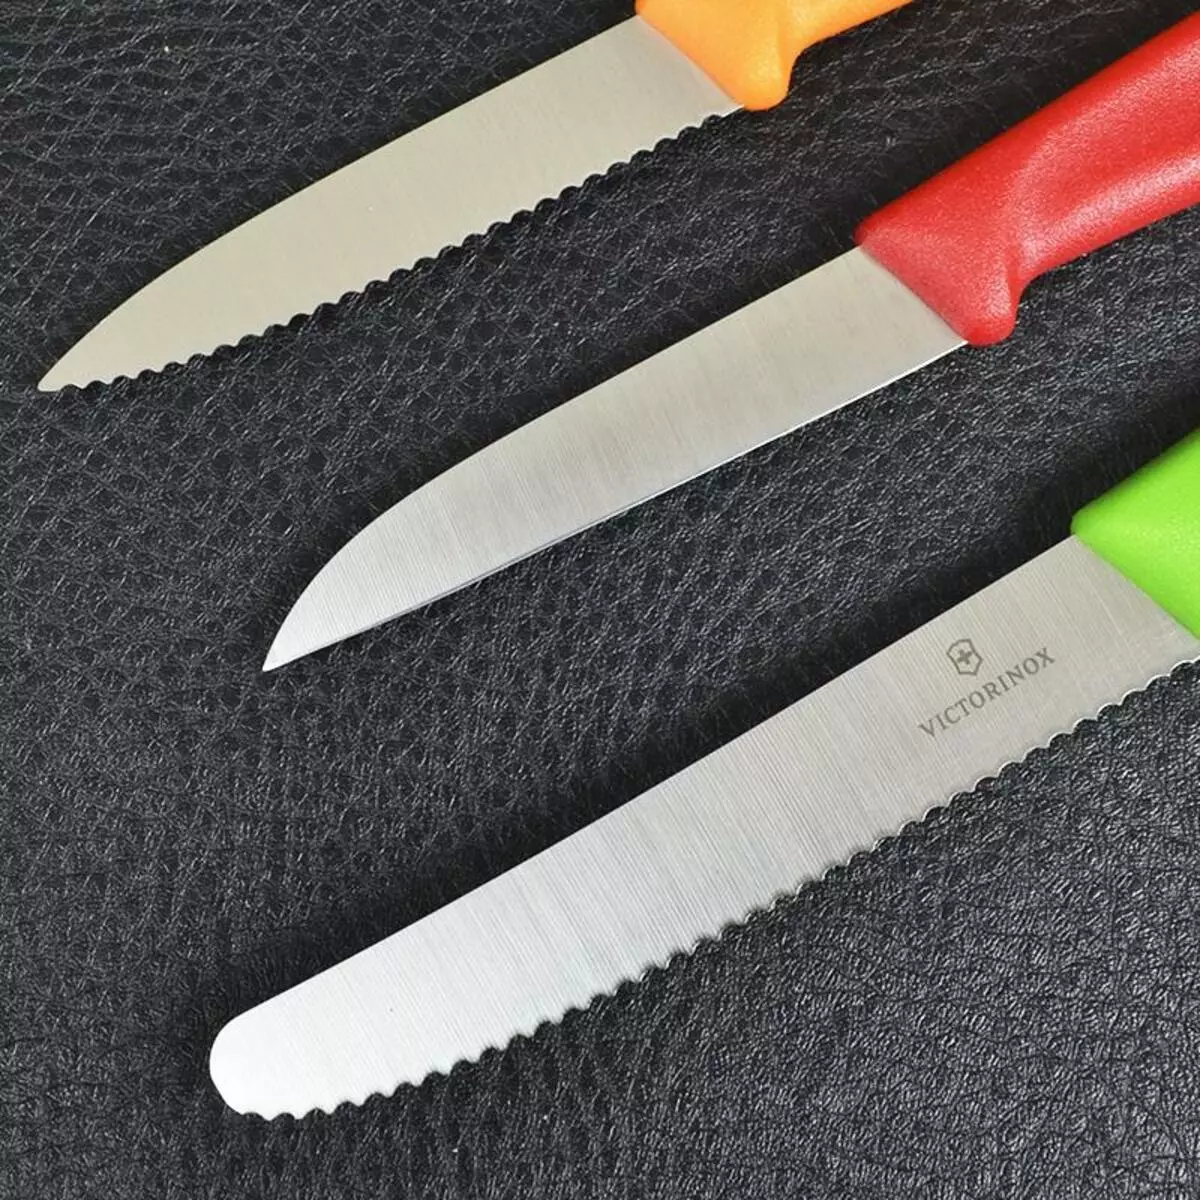 סכינים Victorinox (30 תמונות): בחירת סט של סכיני מטבח. תיאור של סכינים שוויצרי לניקוי תפוחי אדמה ודגמים אחרים. המשרד הטוב ביותר האפשרויות 25001_16